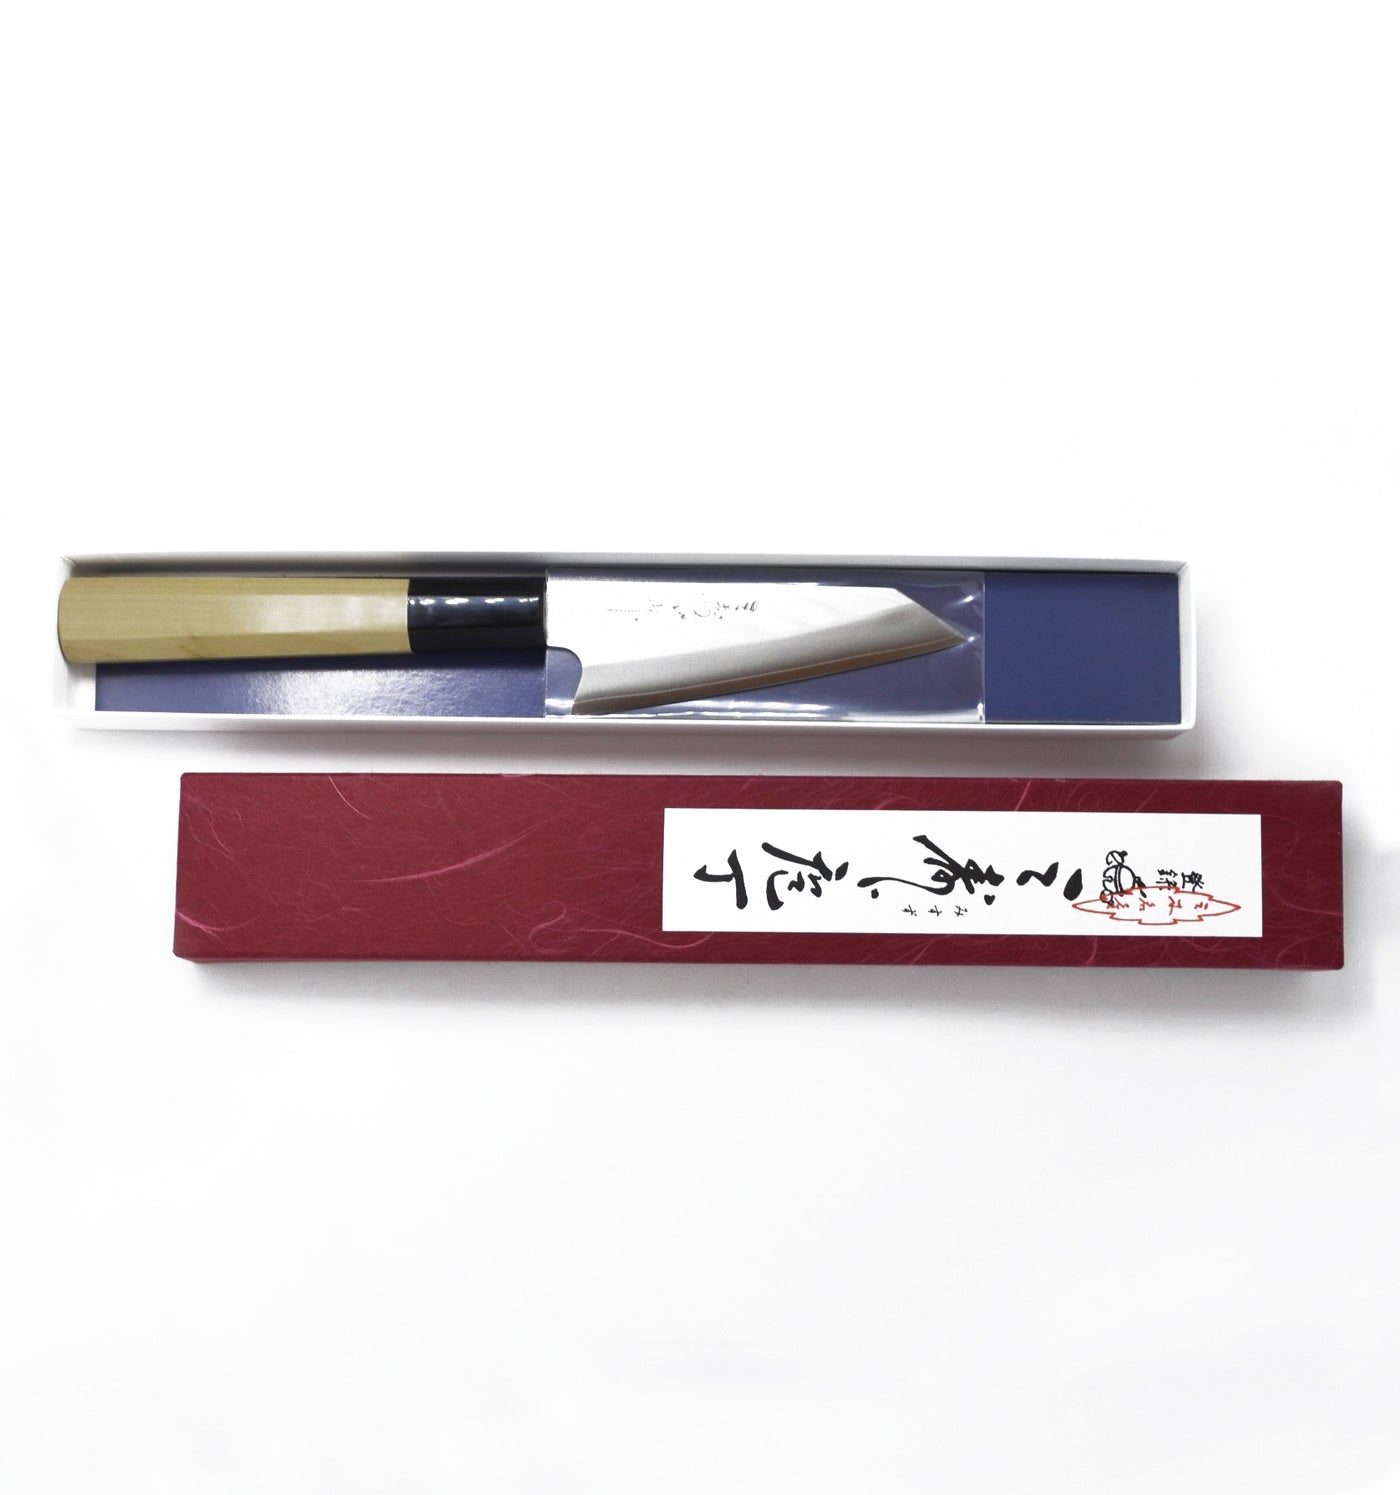 Misuzu All-Purpose Kitchen Knife by Banshu Hamono